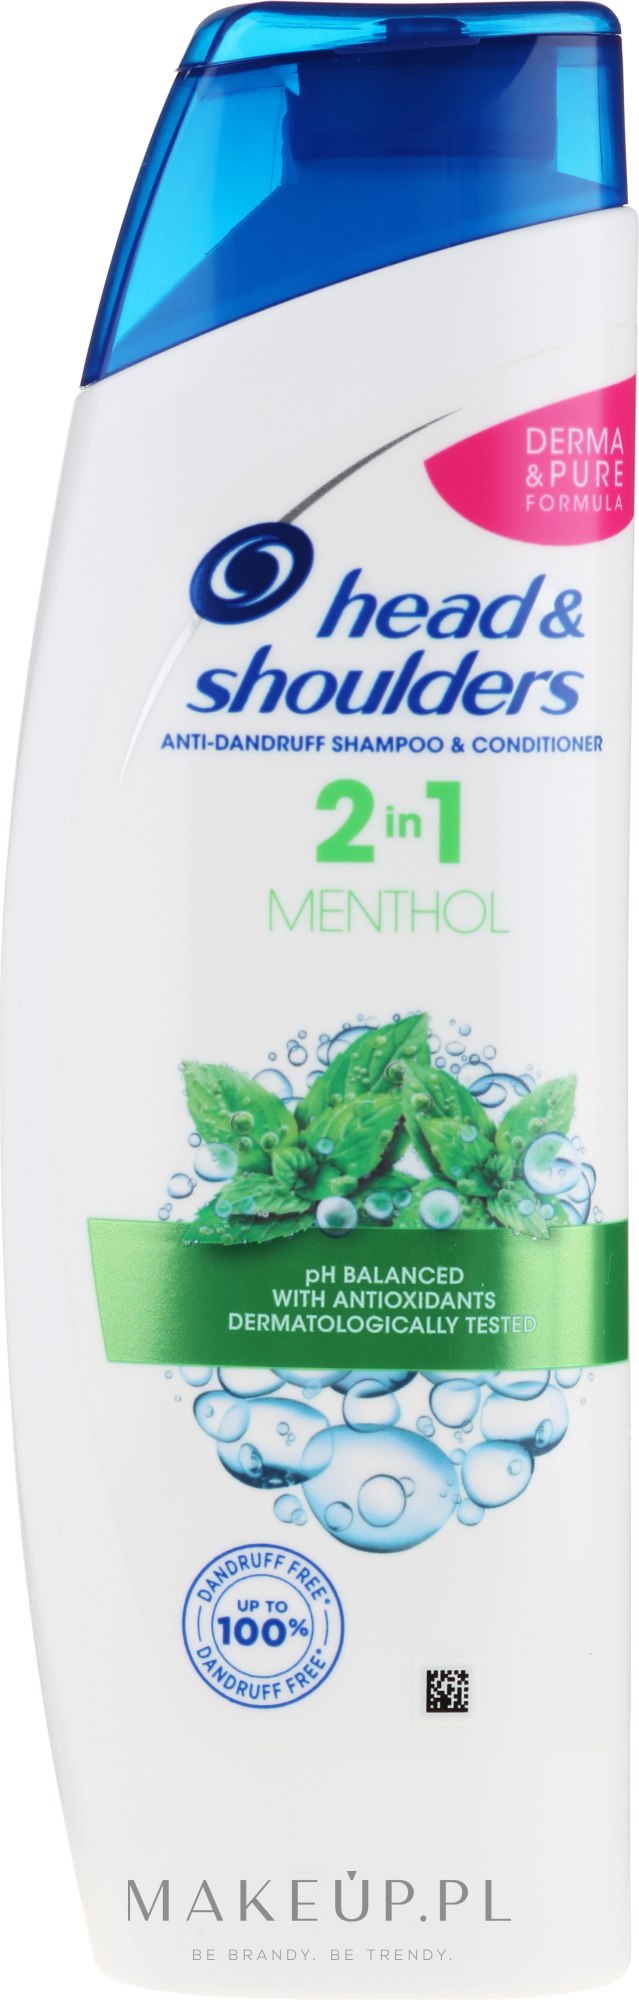 czy szampon heder shoulders jest dobry na pchly